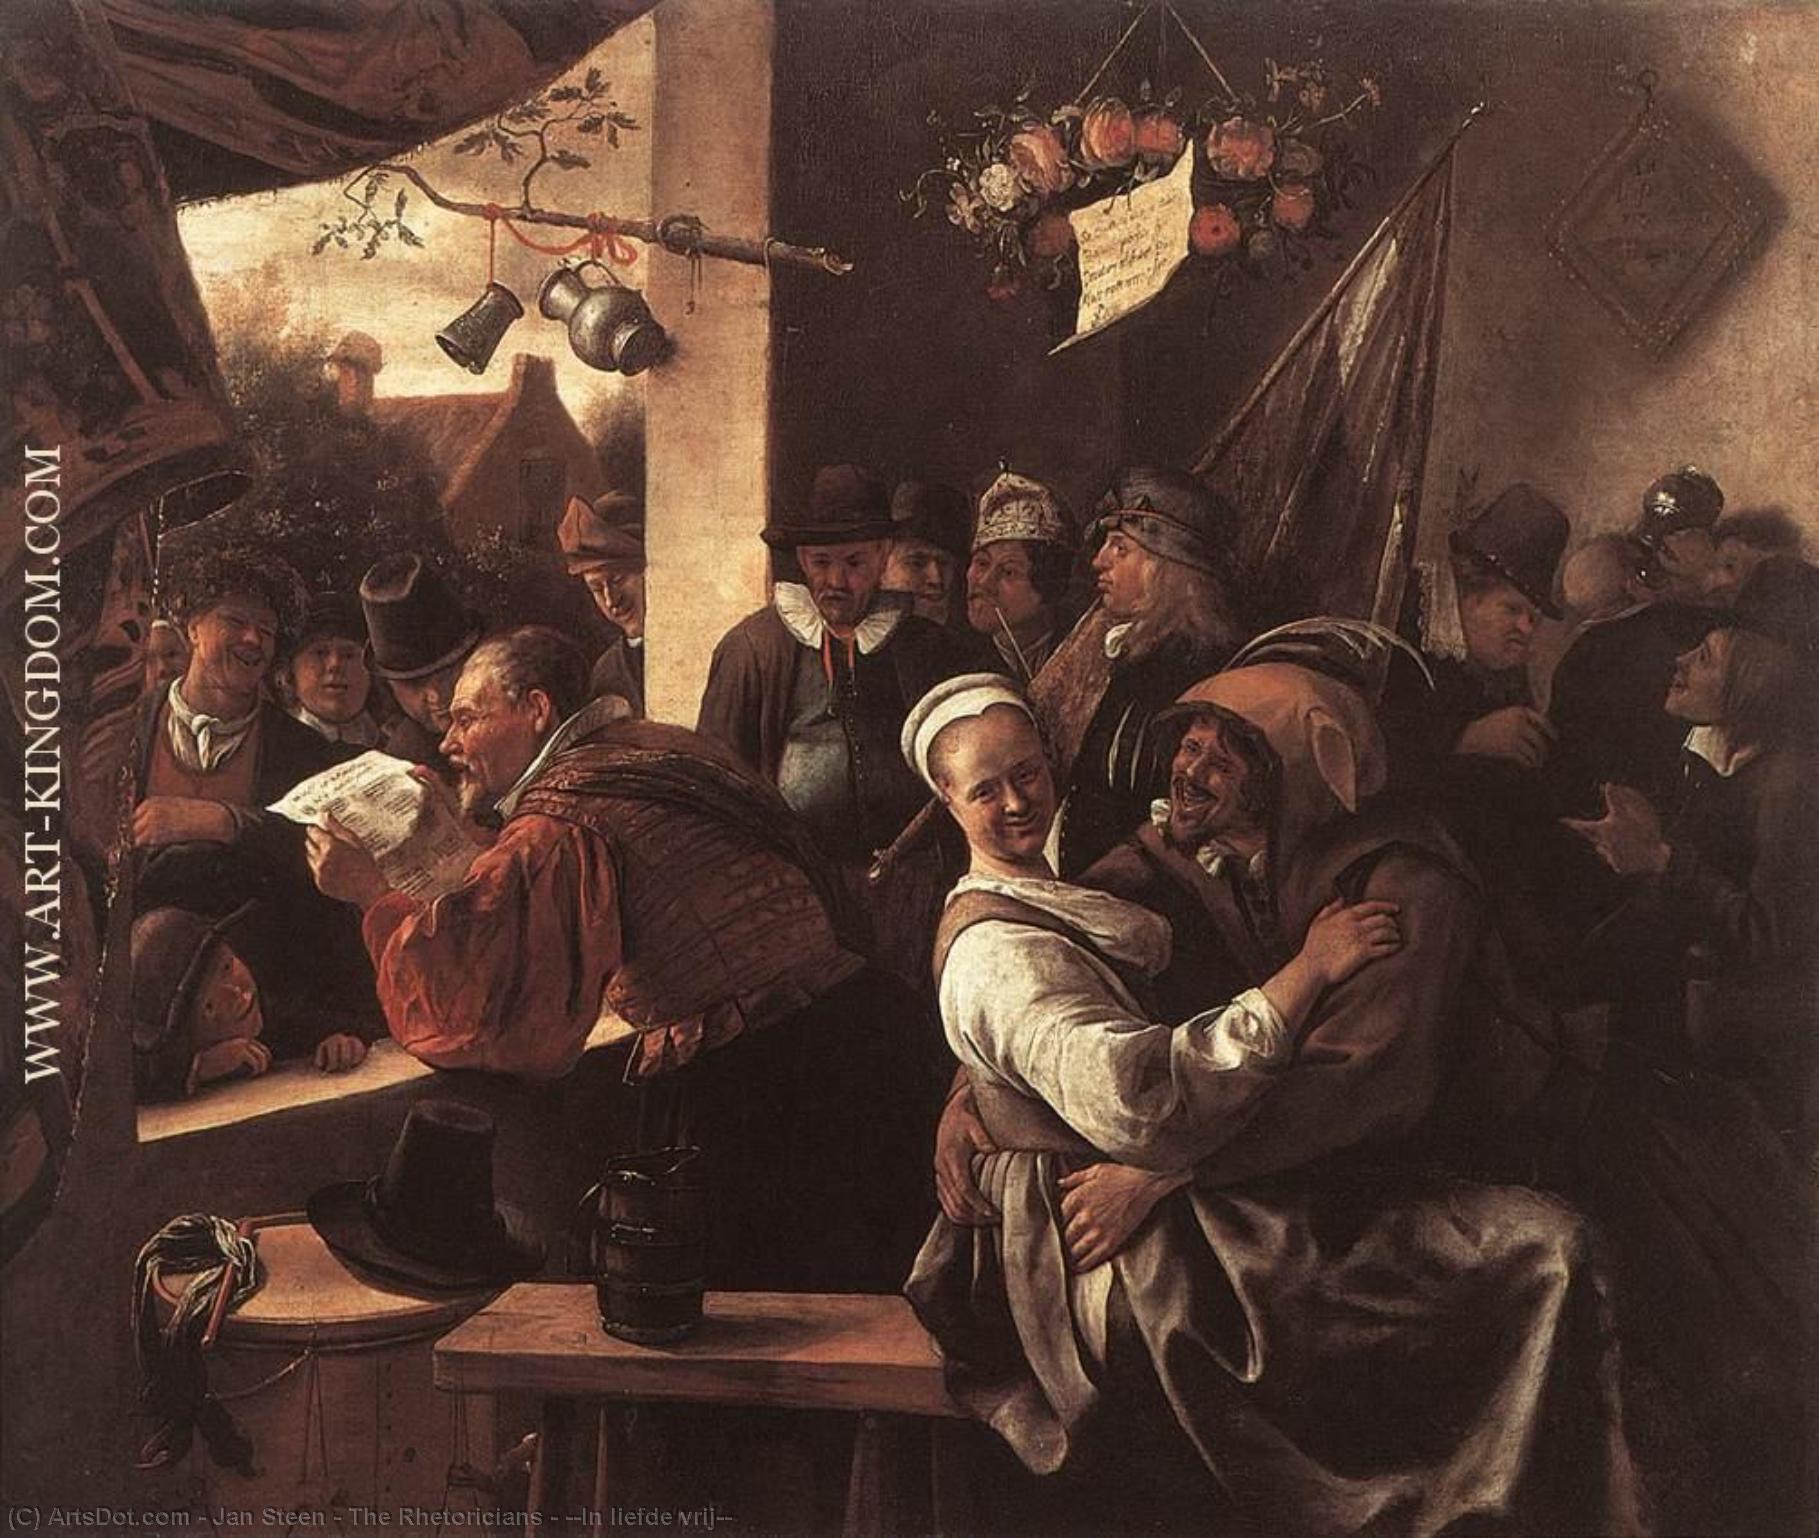 Wikioo.org - The Encyclopedia of Fine Arts - Painting, Artwork by Jan Steen - The Rhetoricians - ''In liefde vrij''